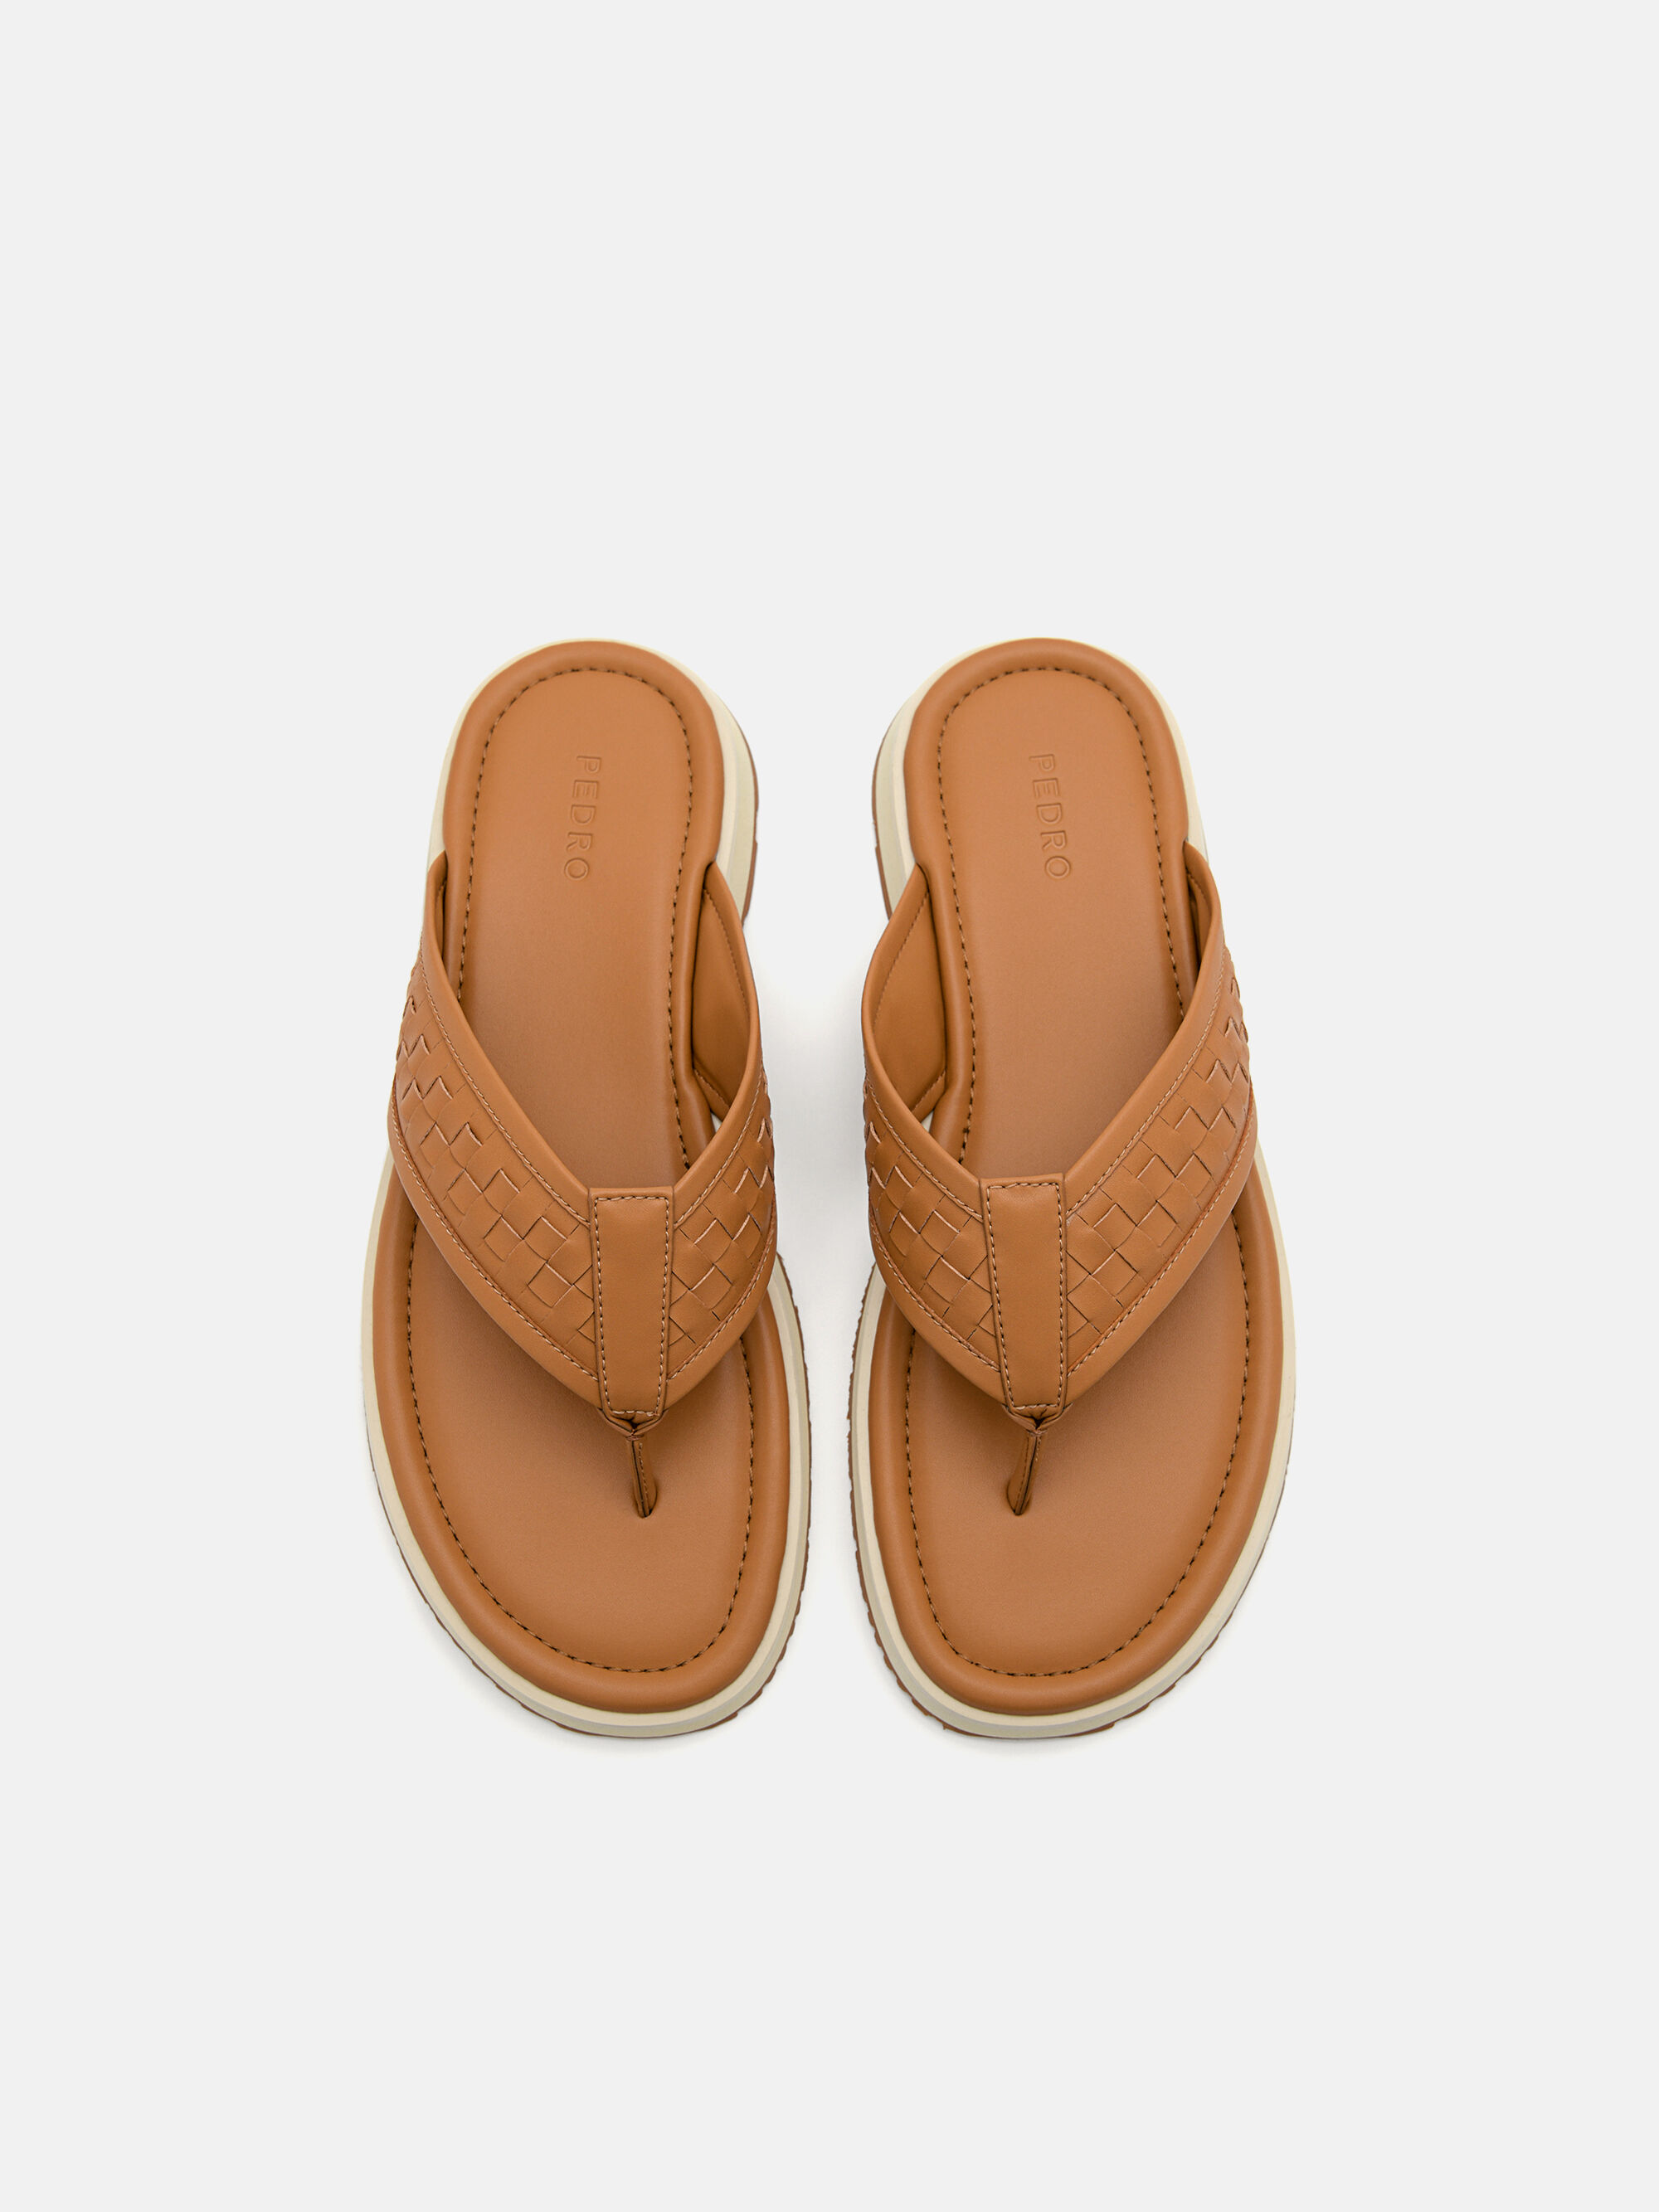 Woven Thong Sandals, Camel